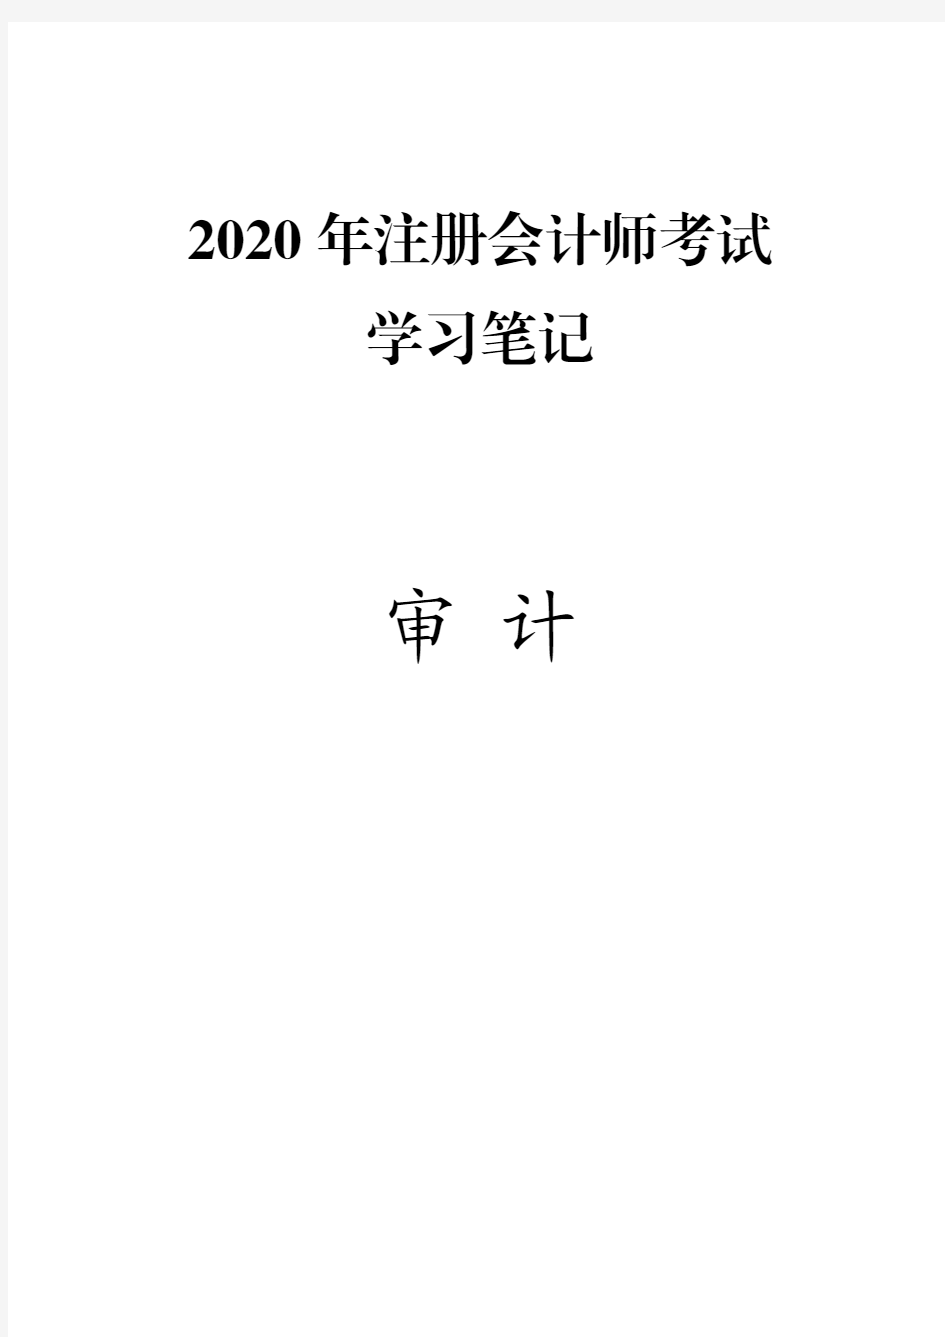 (推荐下载)2020年注册会计师(CPA)考试笔记精华版-审计